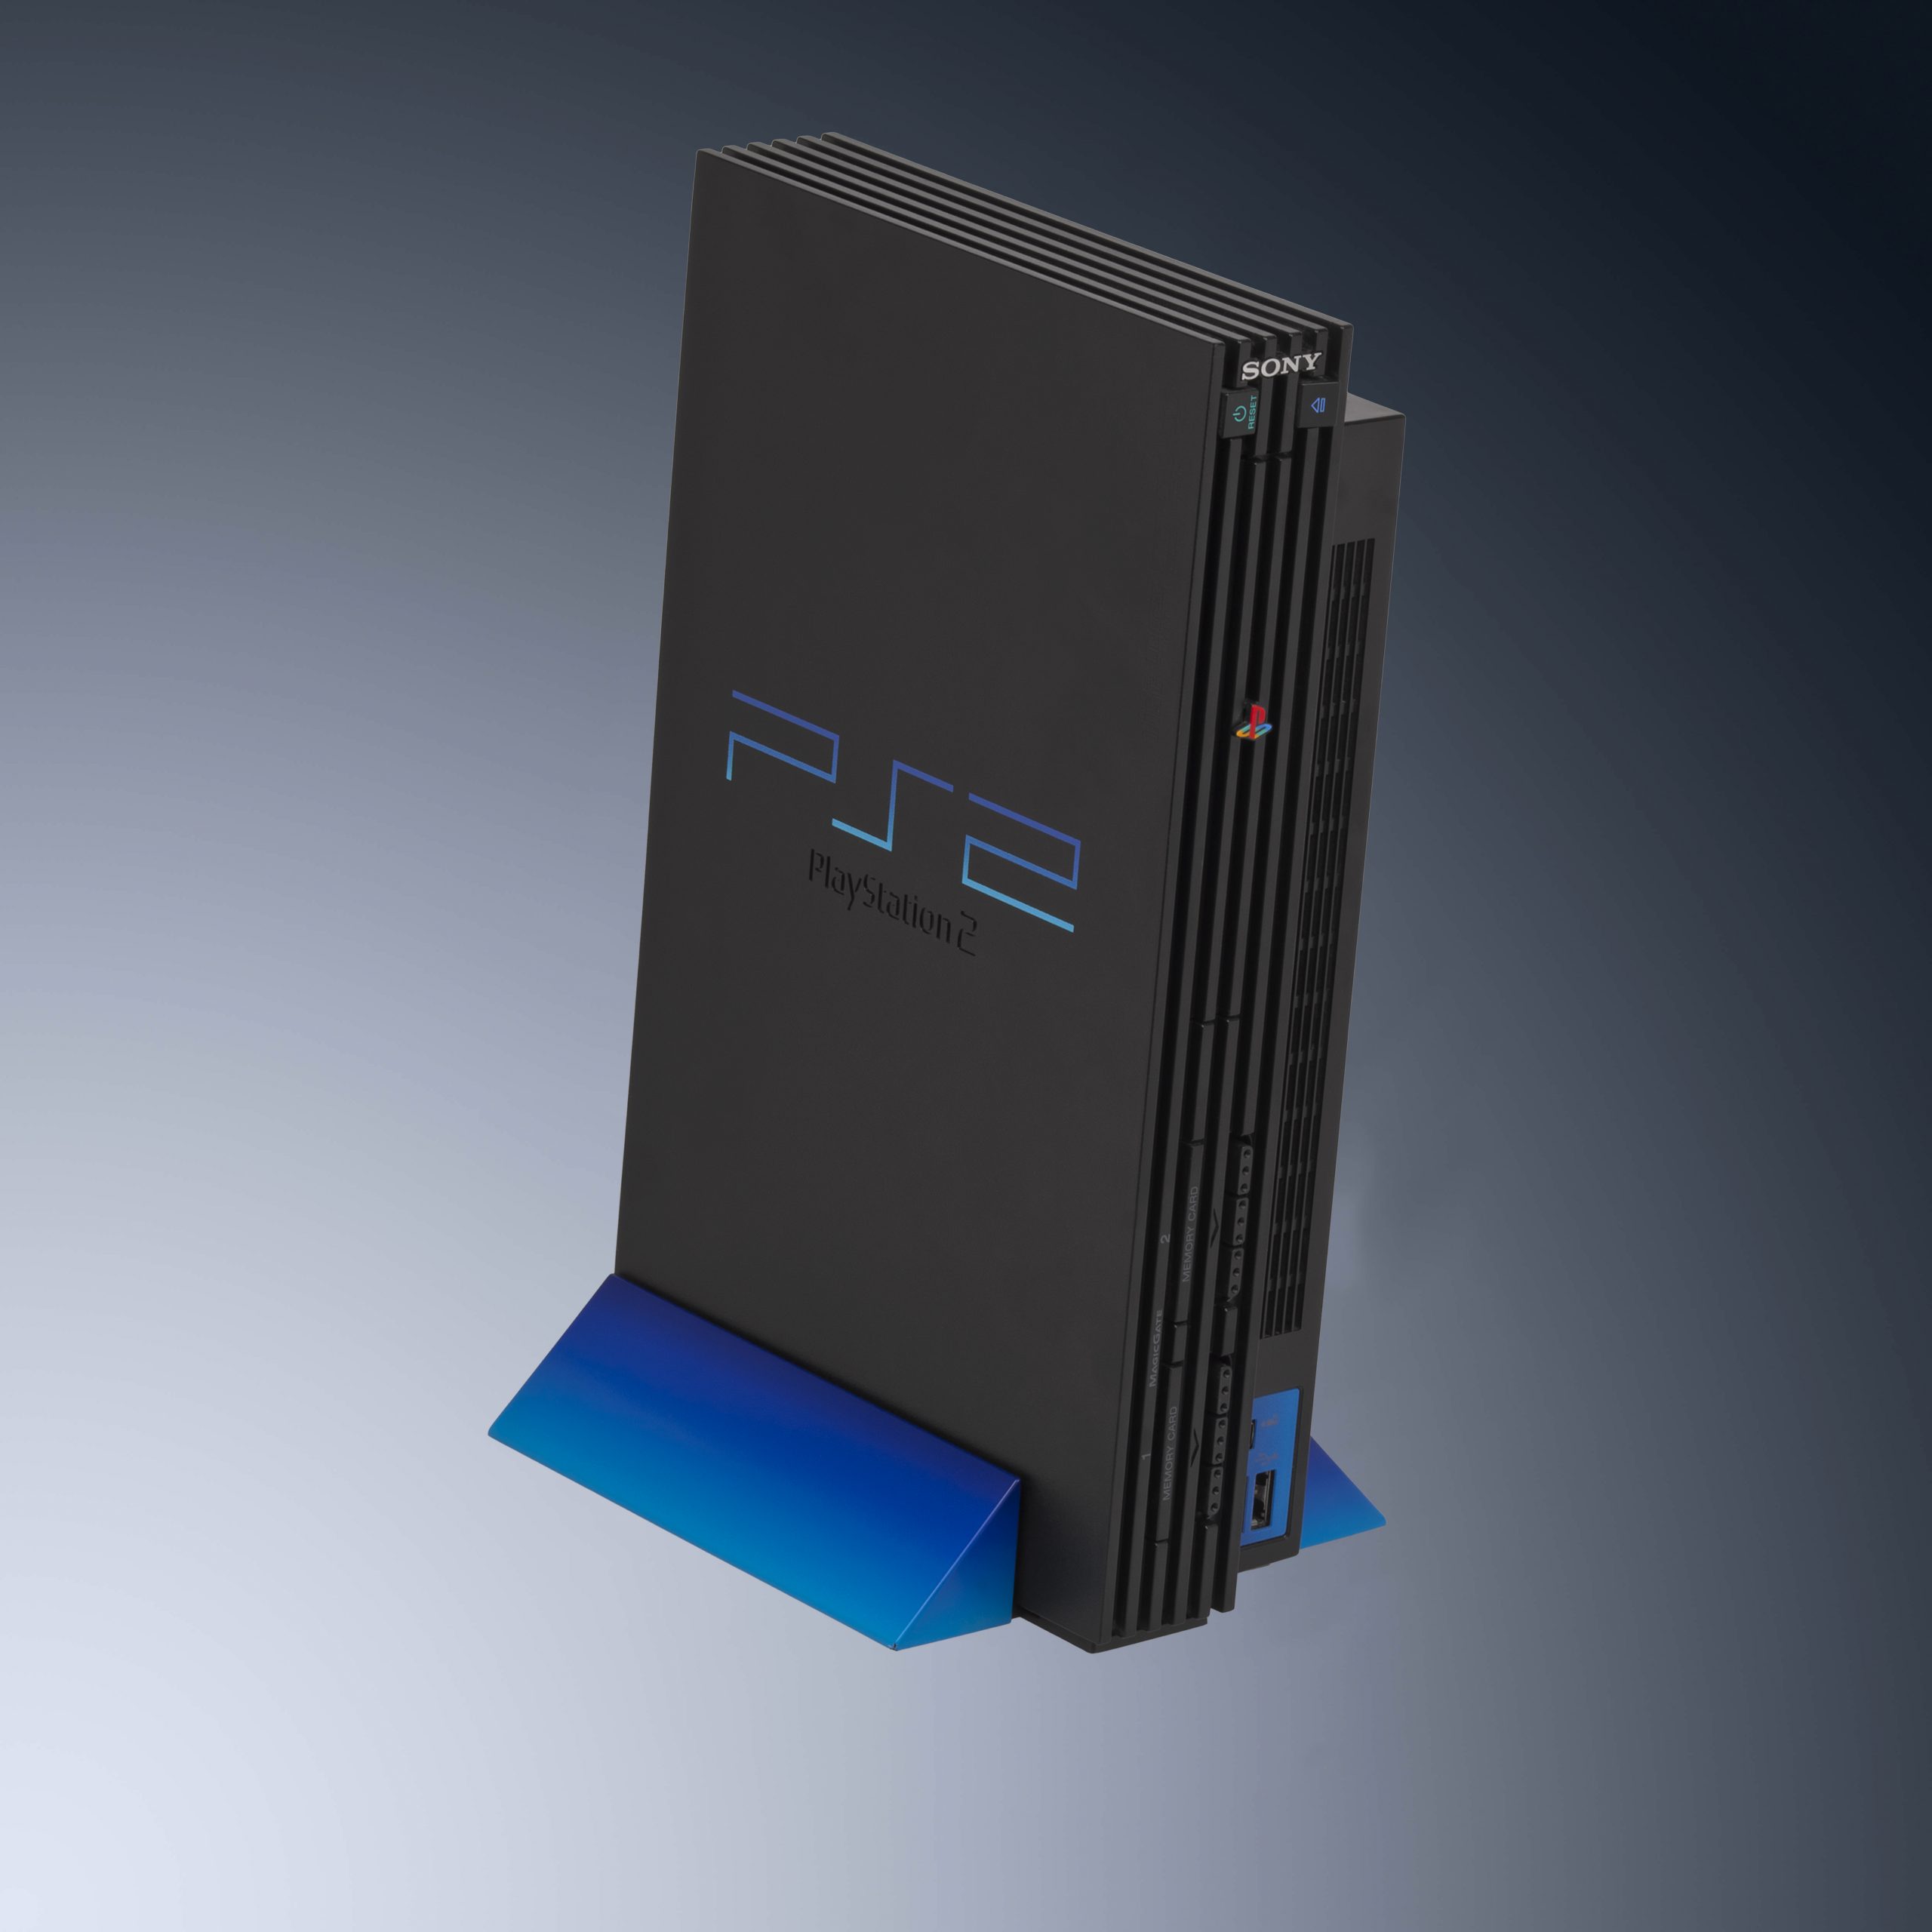 Adaptateur manette + carte mémoire playstation 2 et PC - PS3